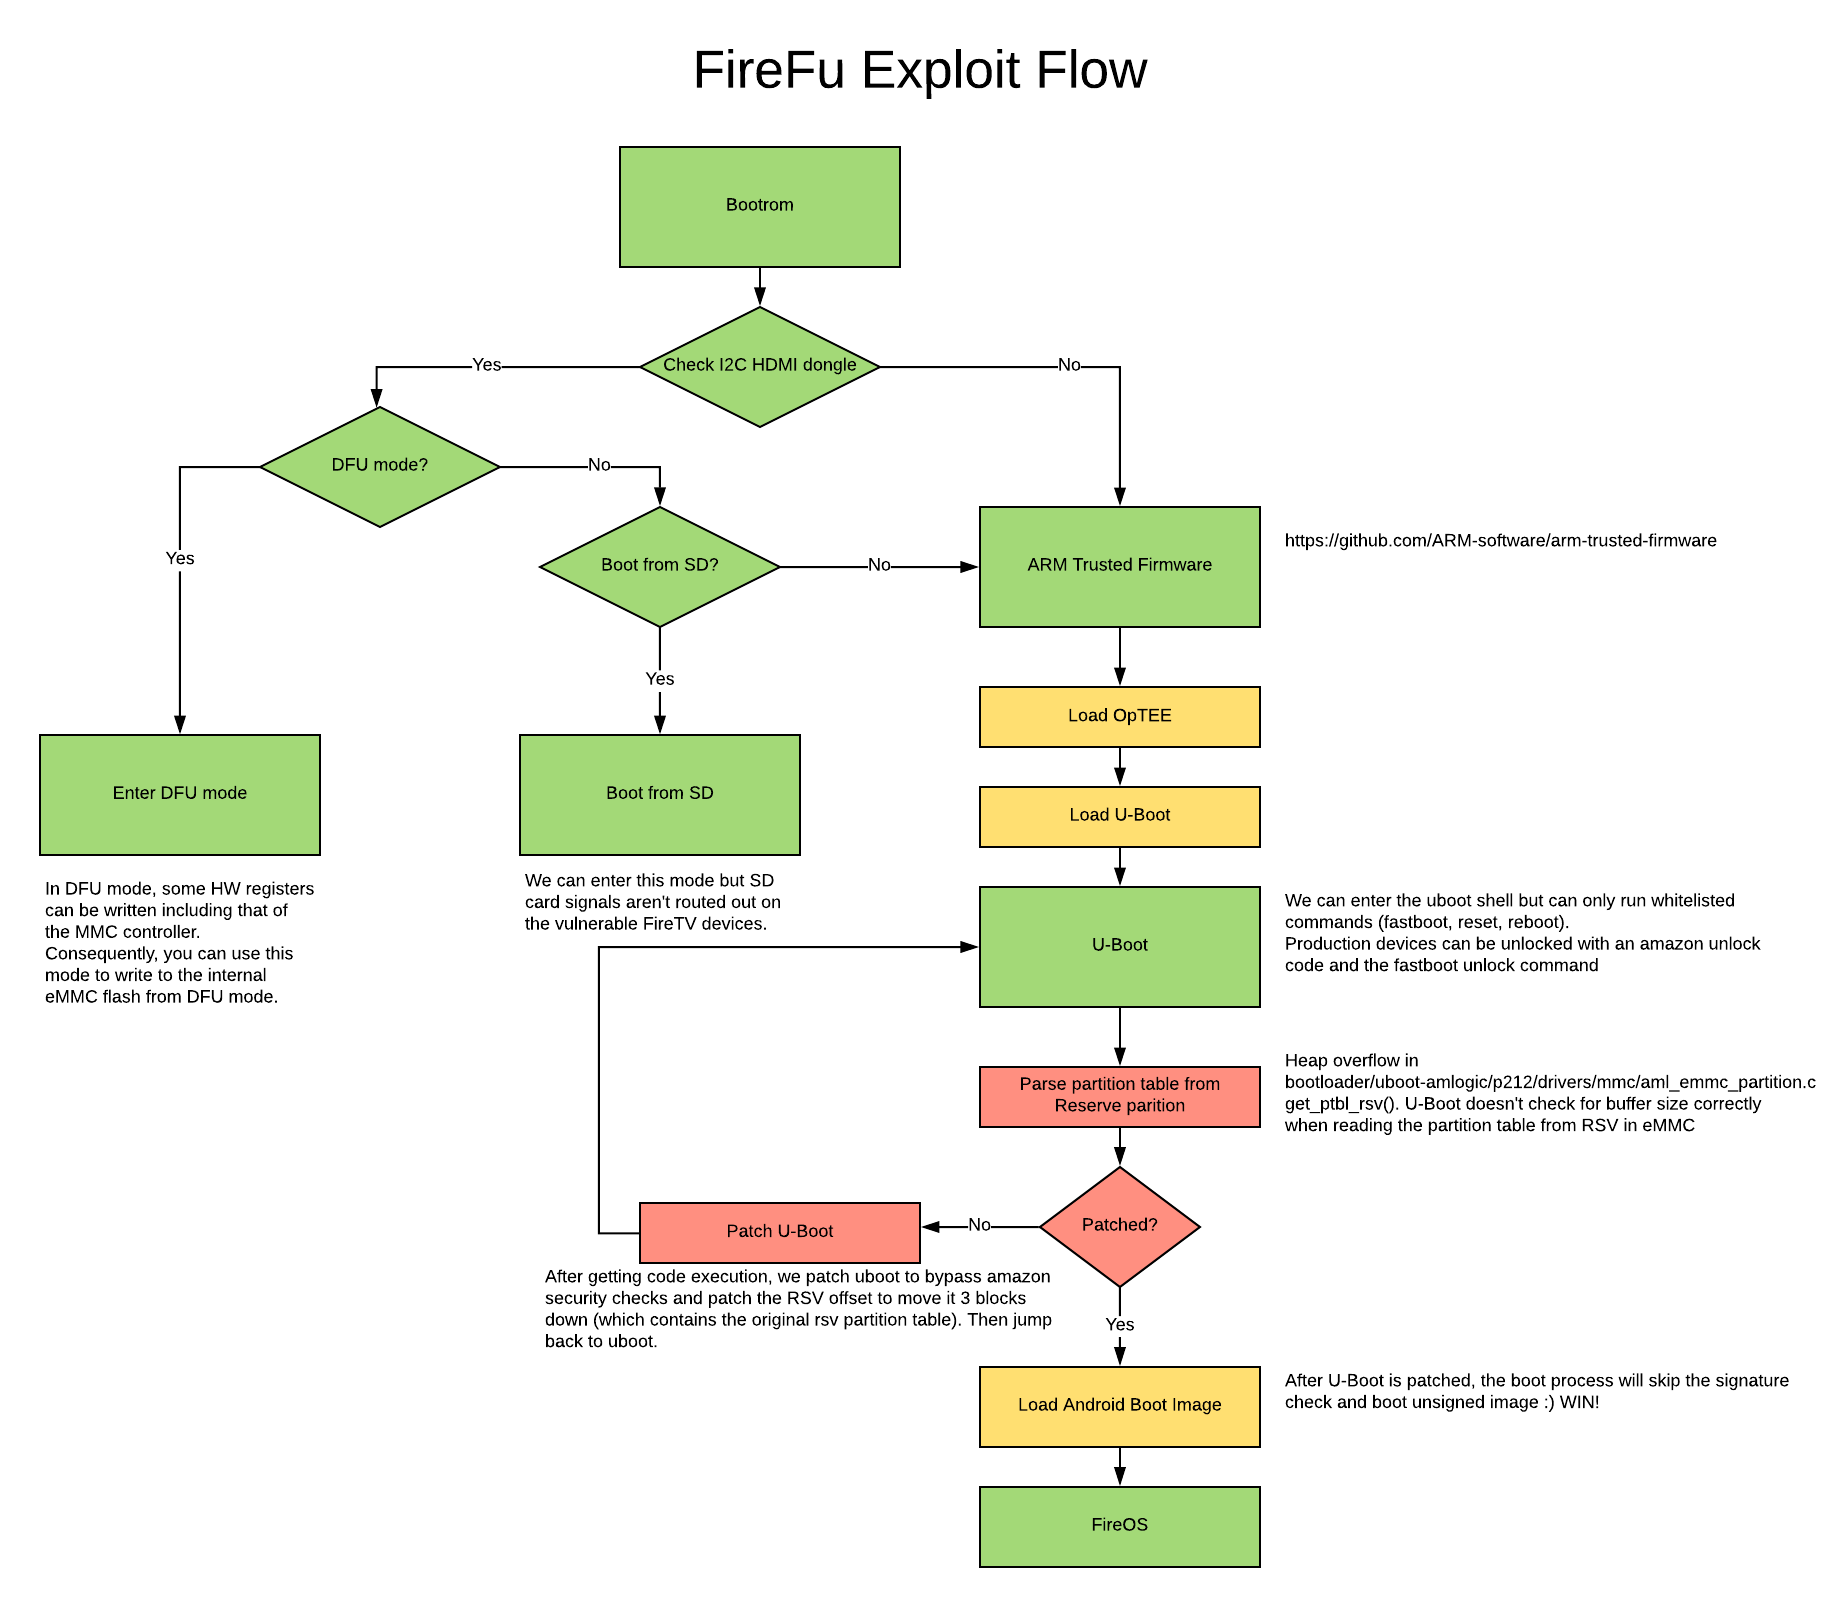 FireFu Exploit Flow Chart